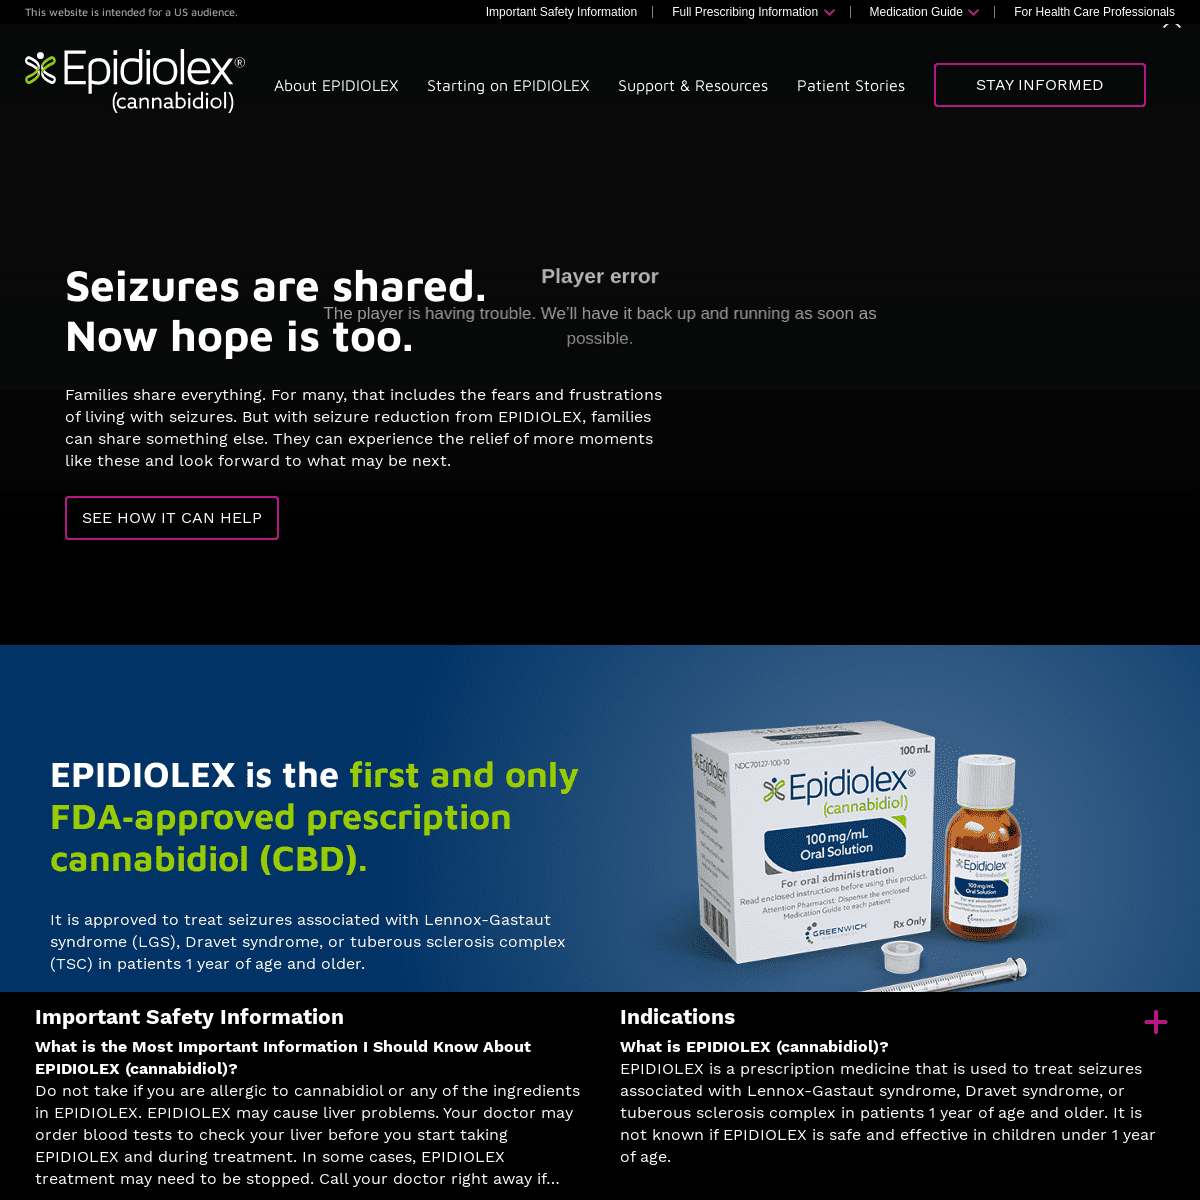 A complete backup of epidiolex.com